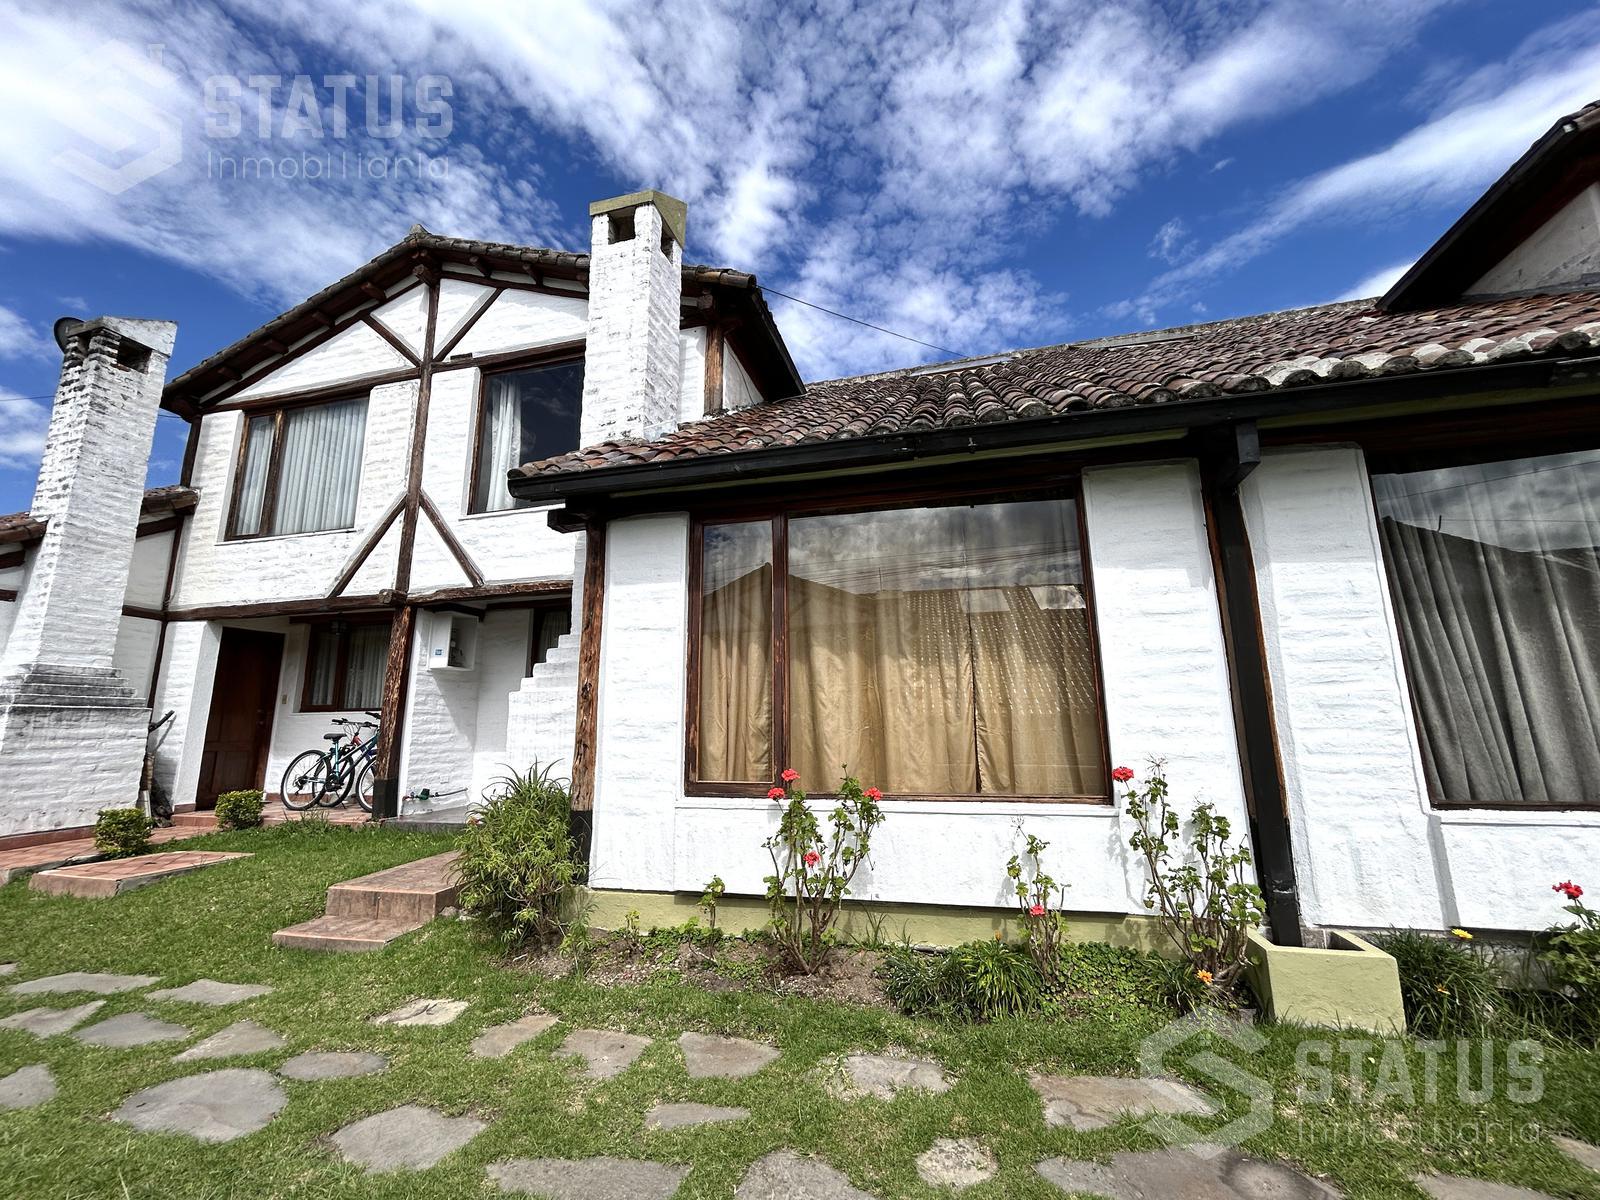 Vendo casa en conjunto con Dorm. en planta baja 134m, sector Sangolquí – Los Chillos $87.500